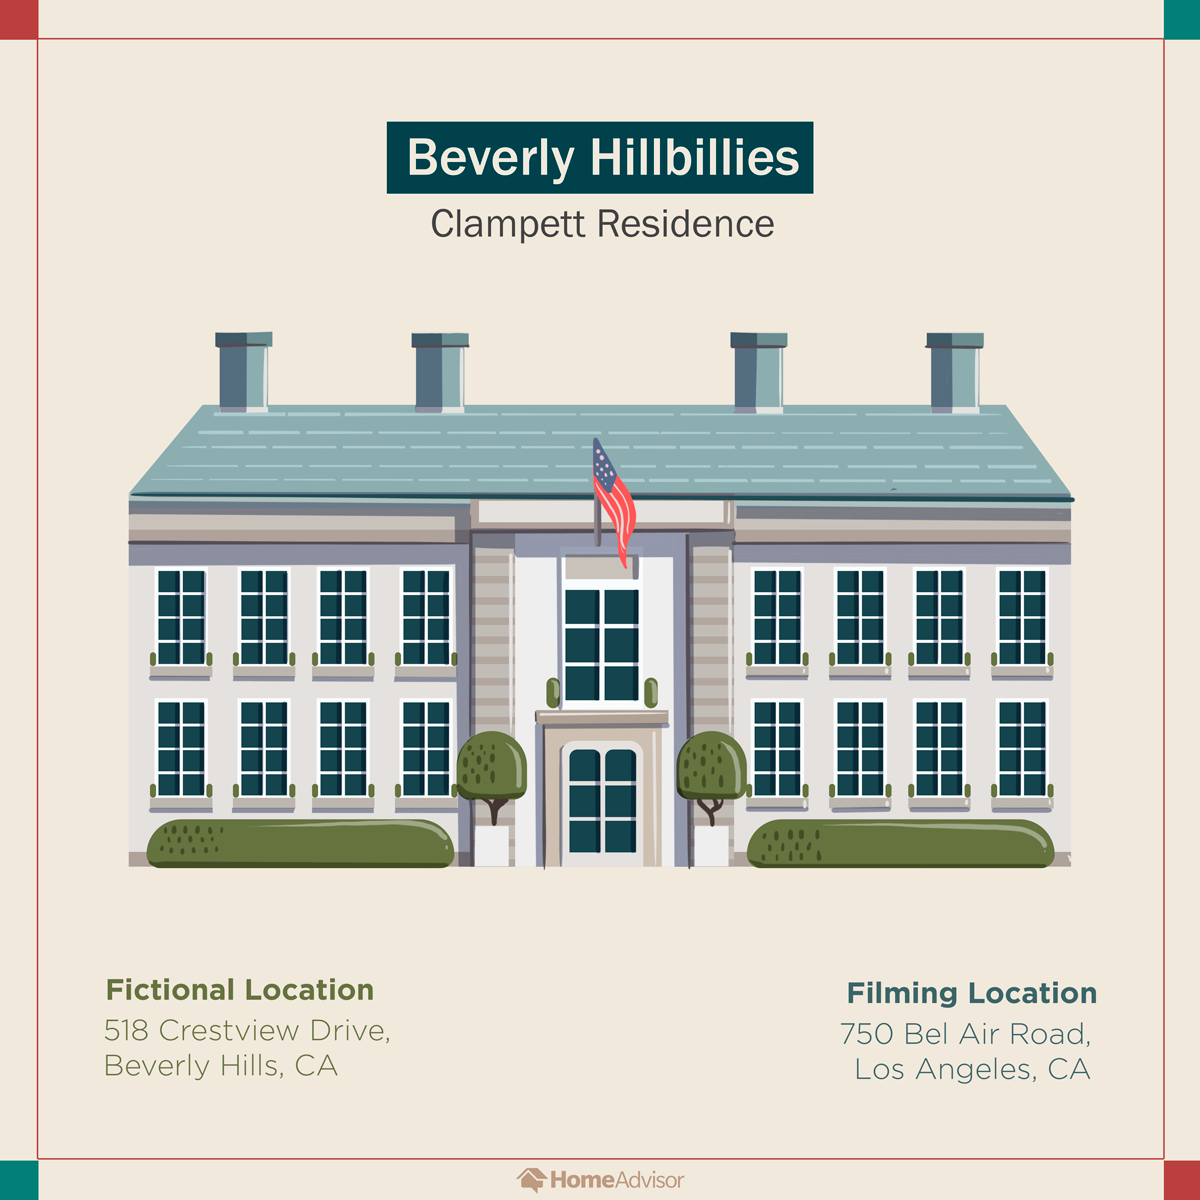 02 Tv Homes Beverly Hillbillies Clampett Residence The Gatethe Gate